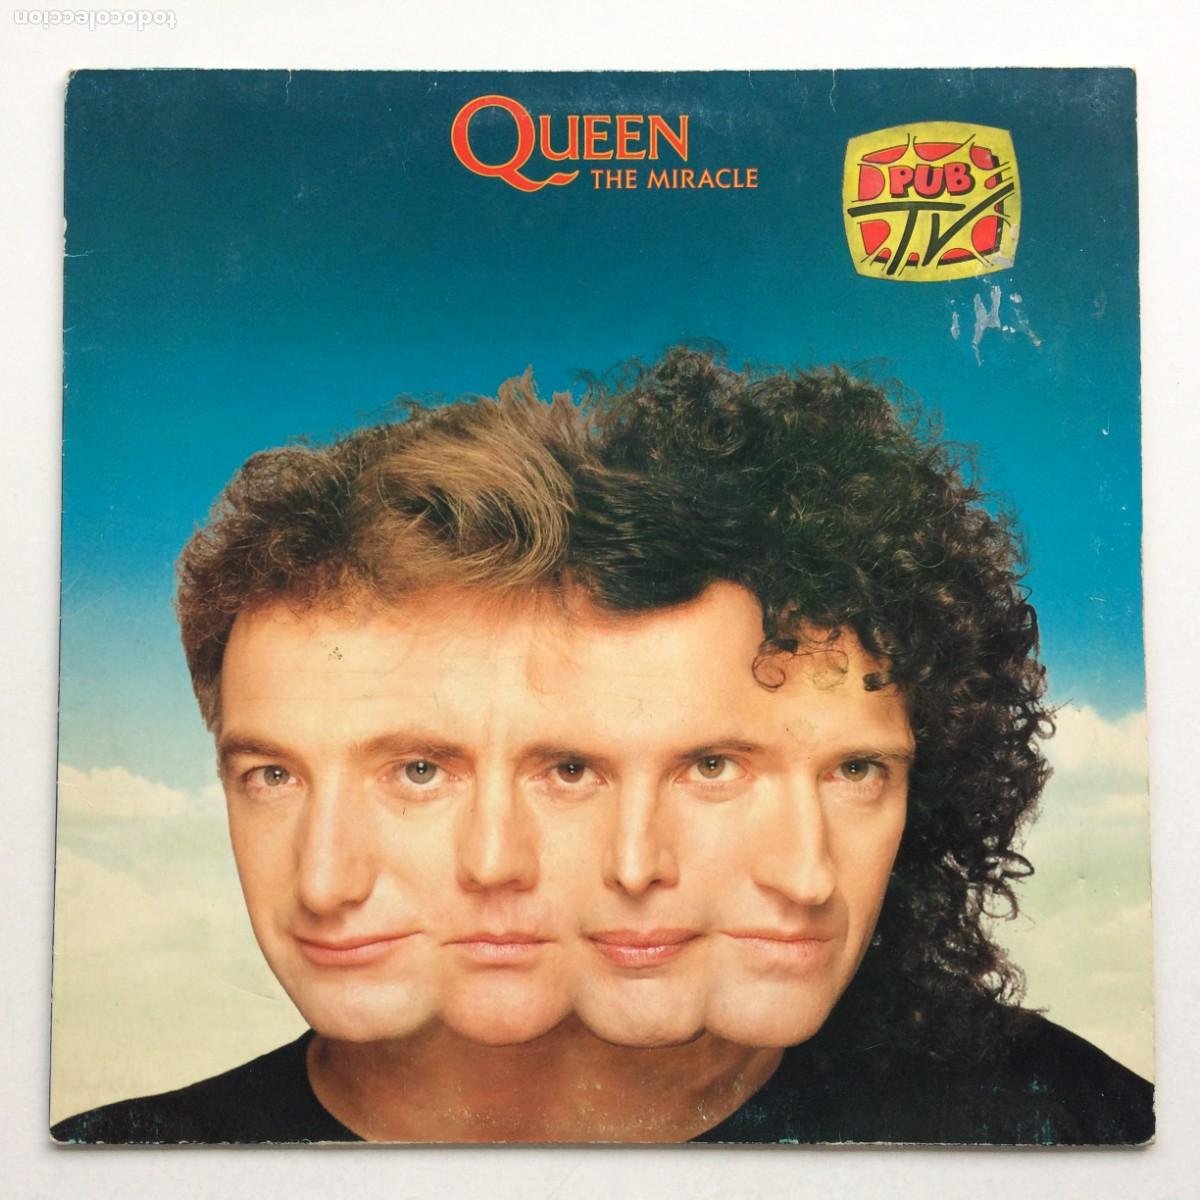 queen i want it all 7” single vinilo del año 19 - Compra venta en  todocoleccion